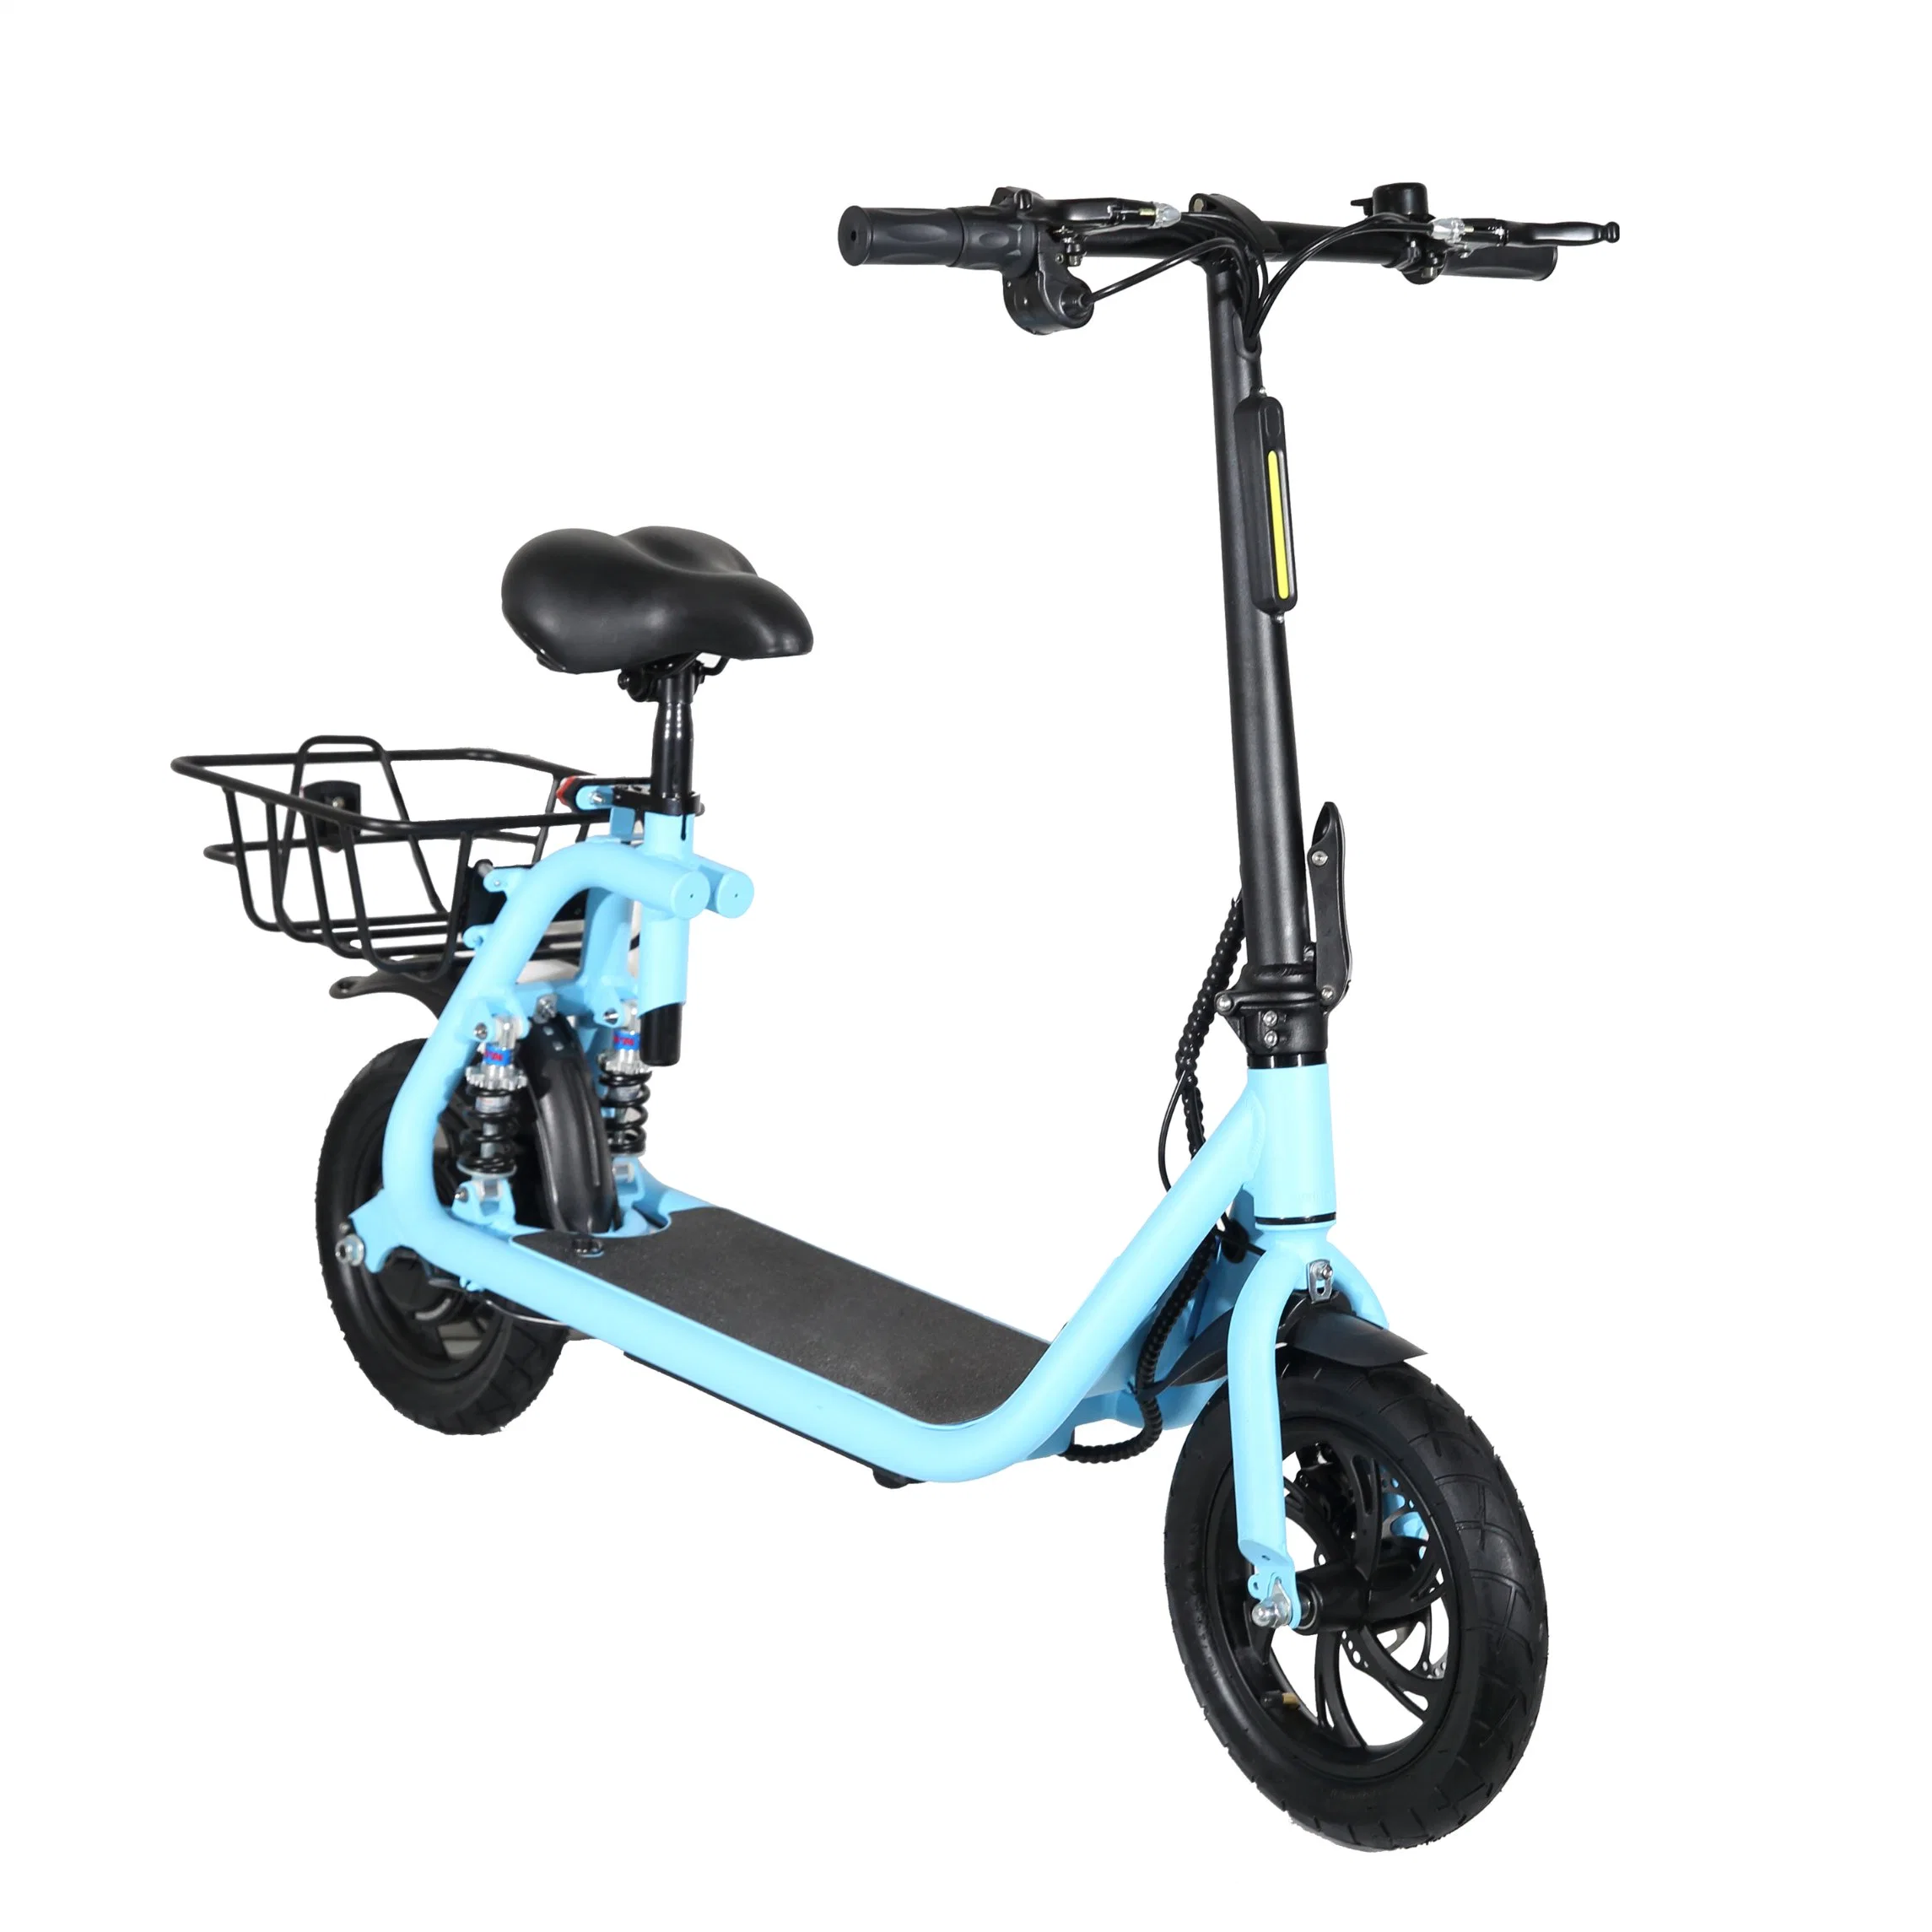 2022 Nuevo producto de la grasa eléctrica bicicleta Bicicleta Playa Crusier /Bicicleta eléctrica bicicleta eléctrica Carretera 48V 36V500W